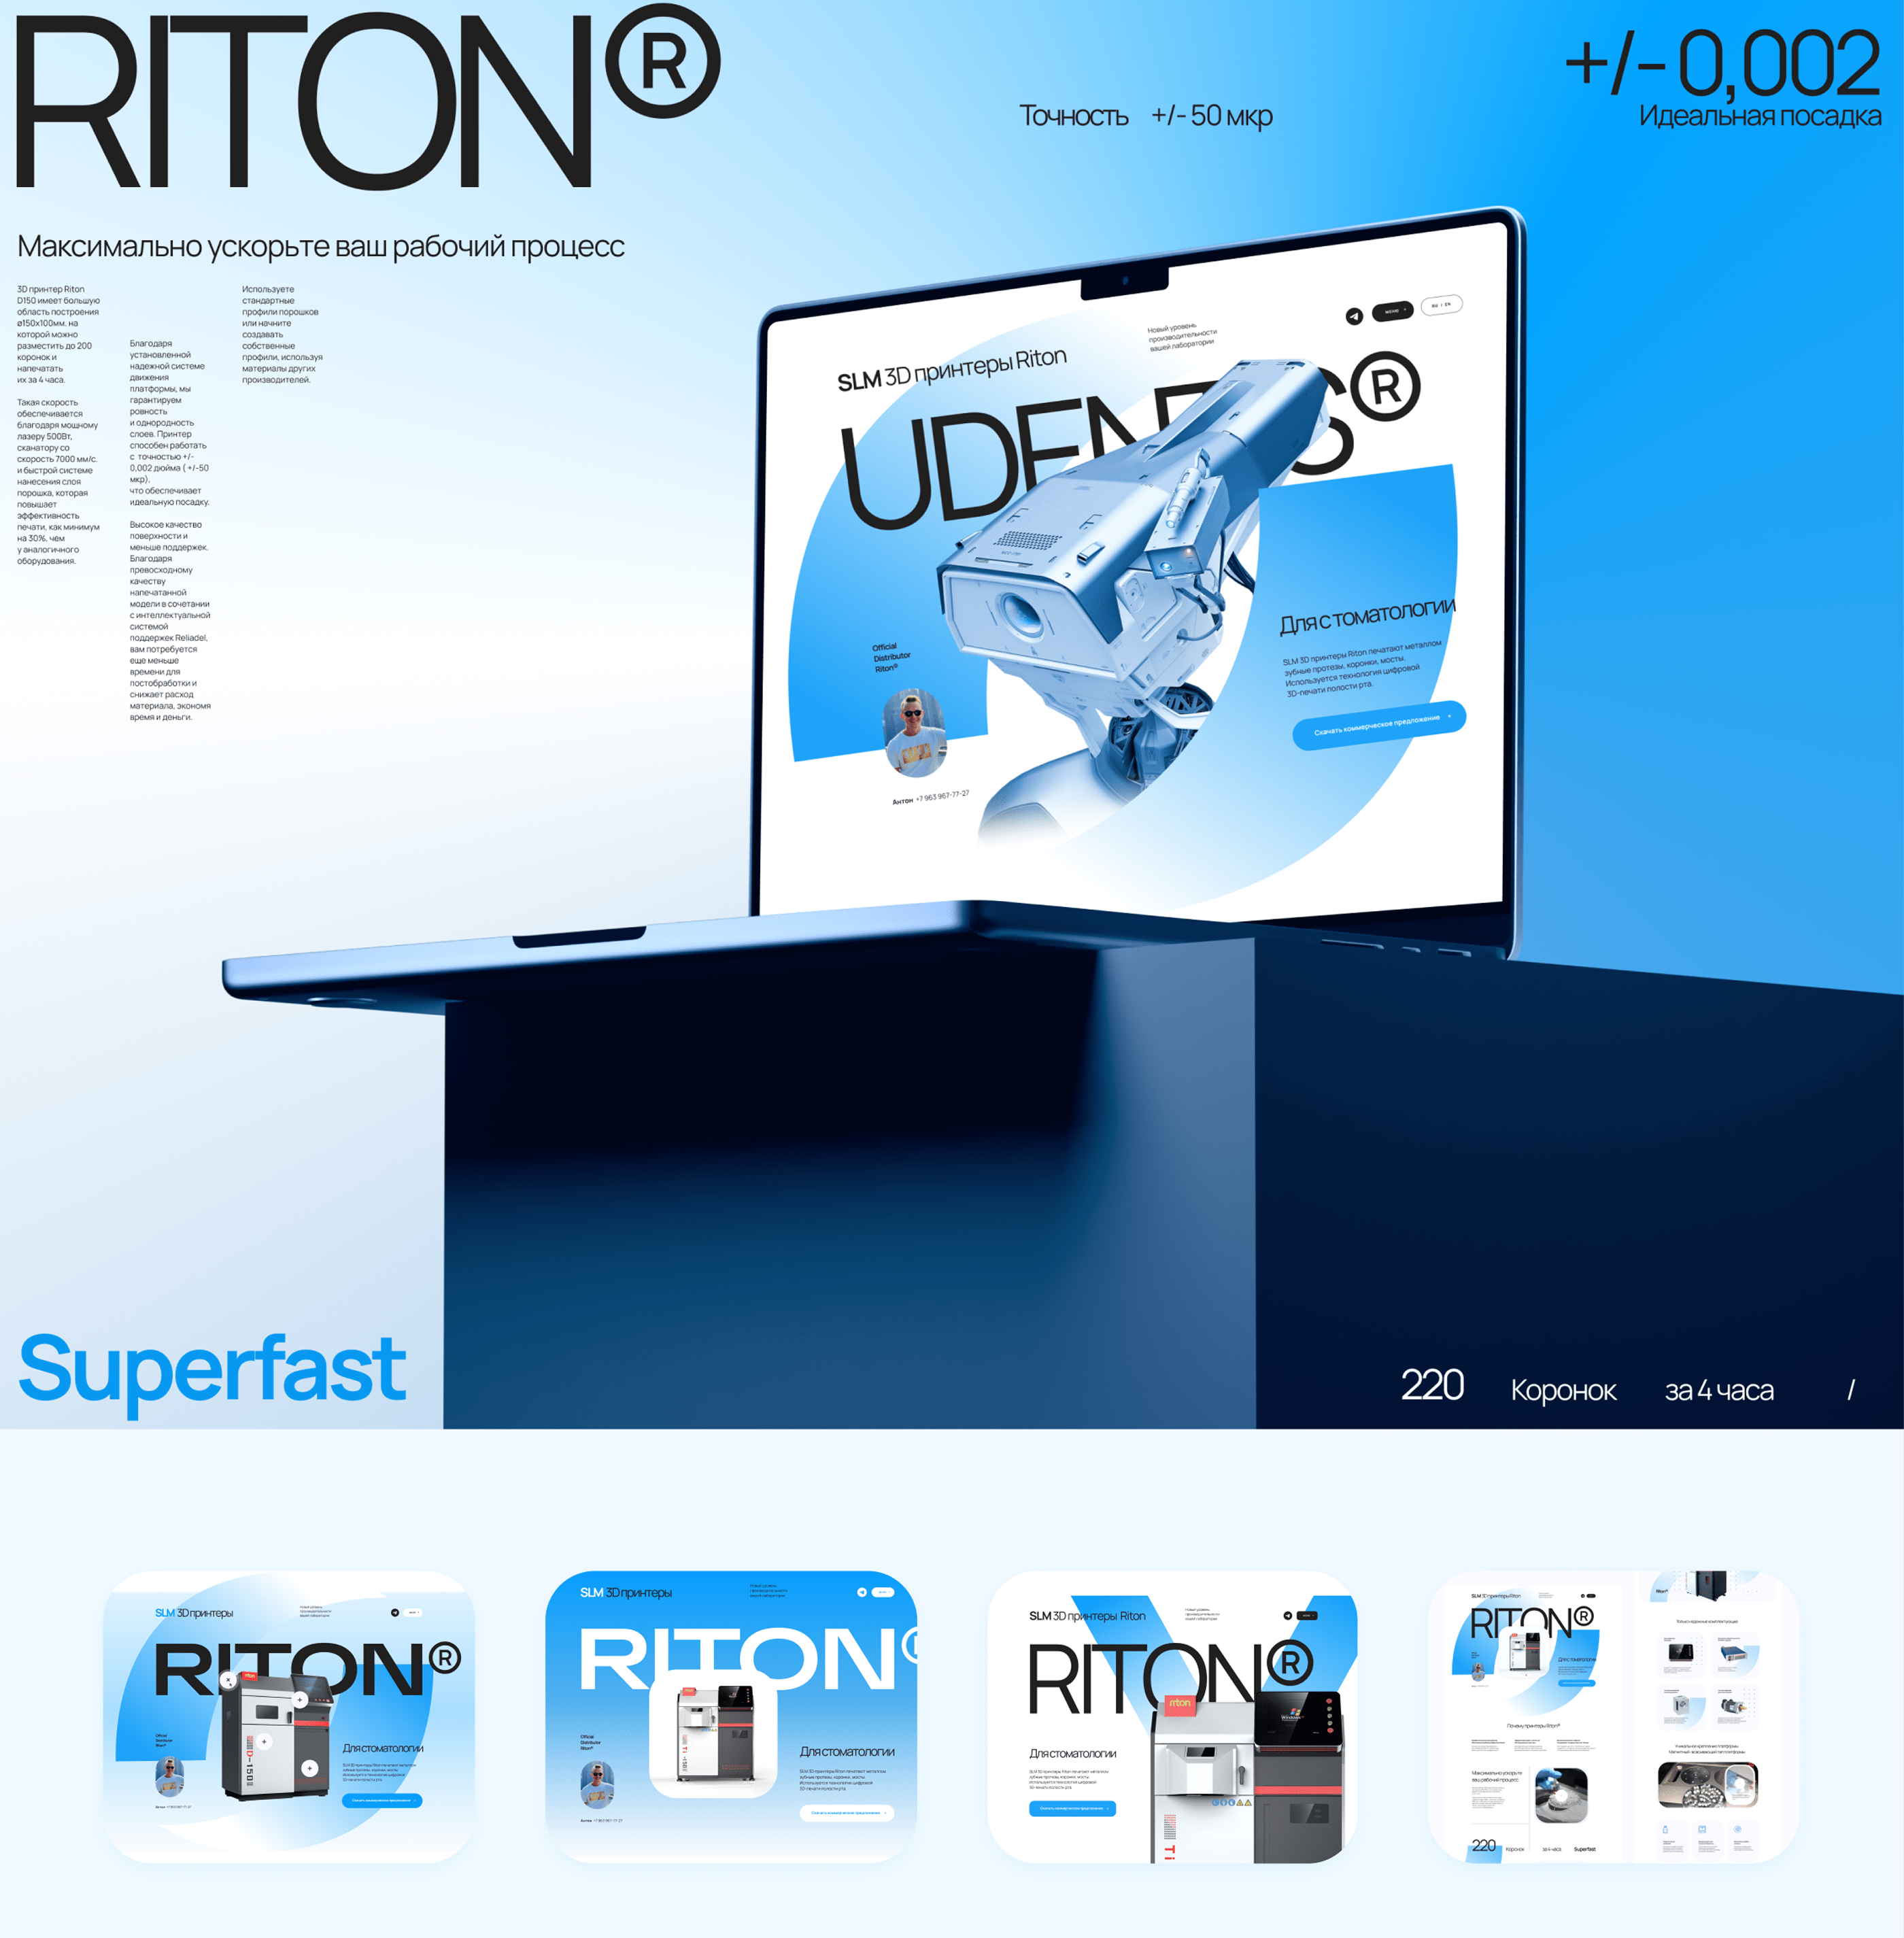 3D принтеры Riton | Сайт на Tilda — Изображение №1 — Интерфейсы, Брендинг, Анимация на Dprofile